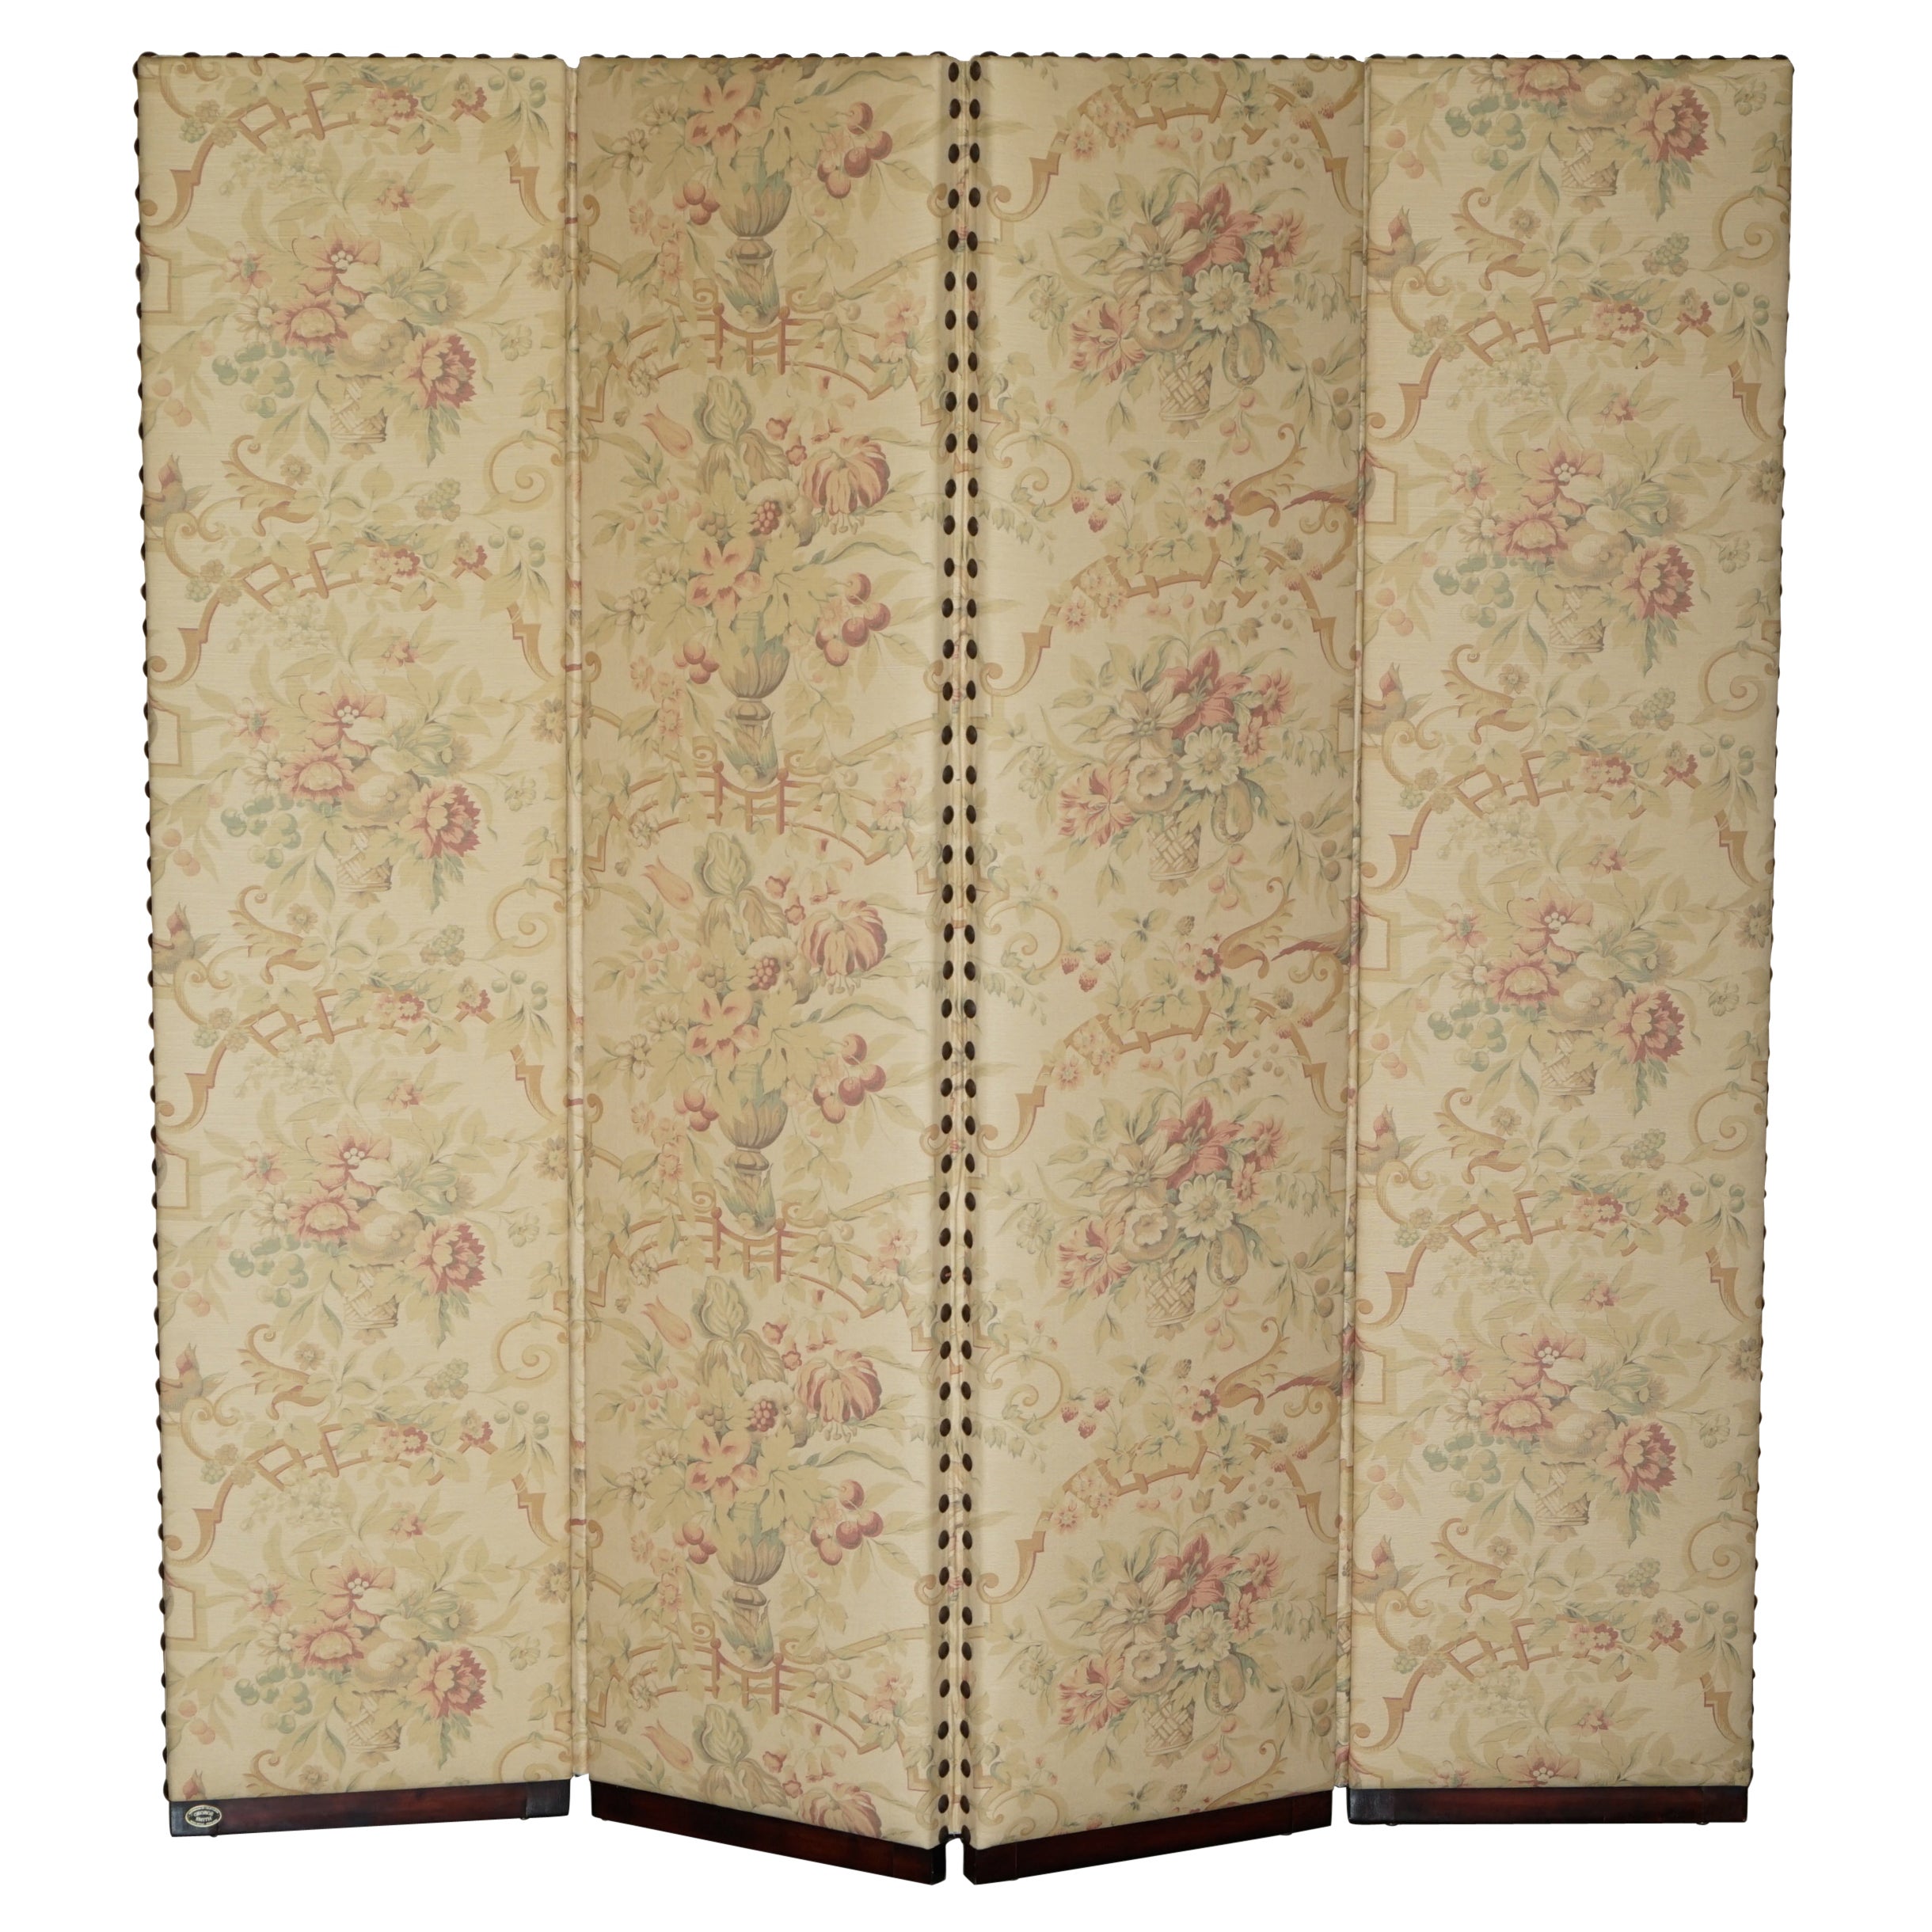 Fine Custom Made George Smith Chelsea Hardwood & Floral Upholstered Room Divider